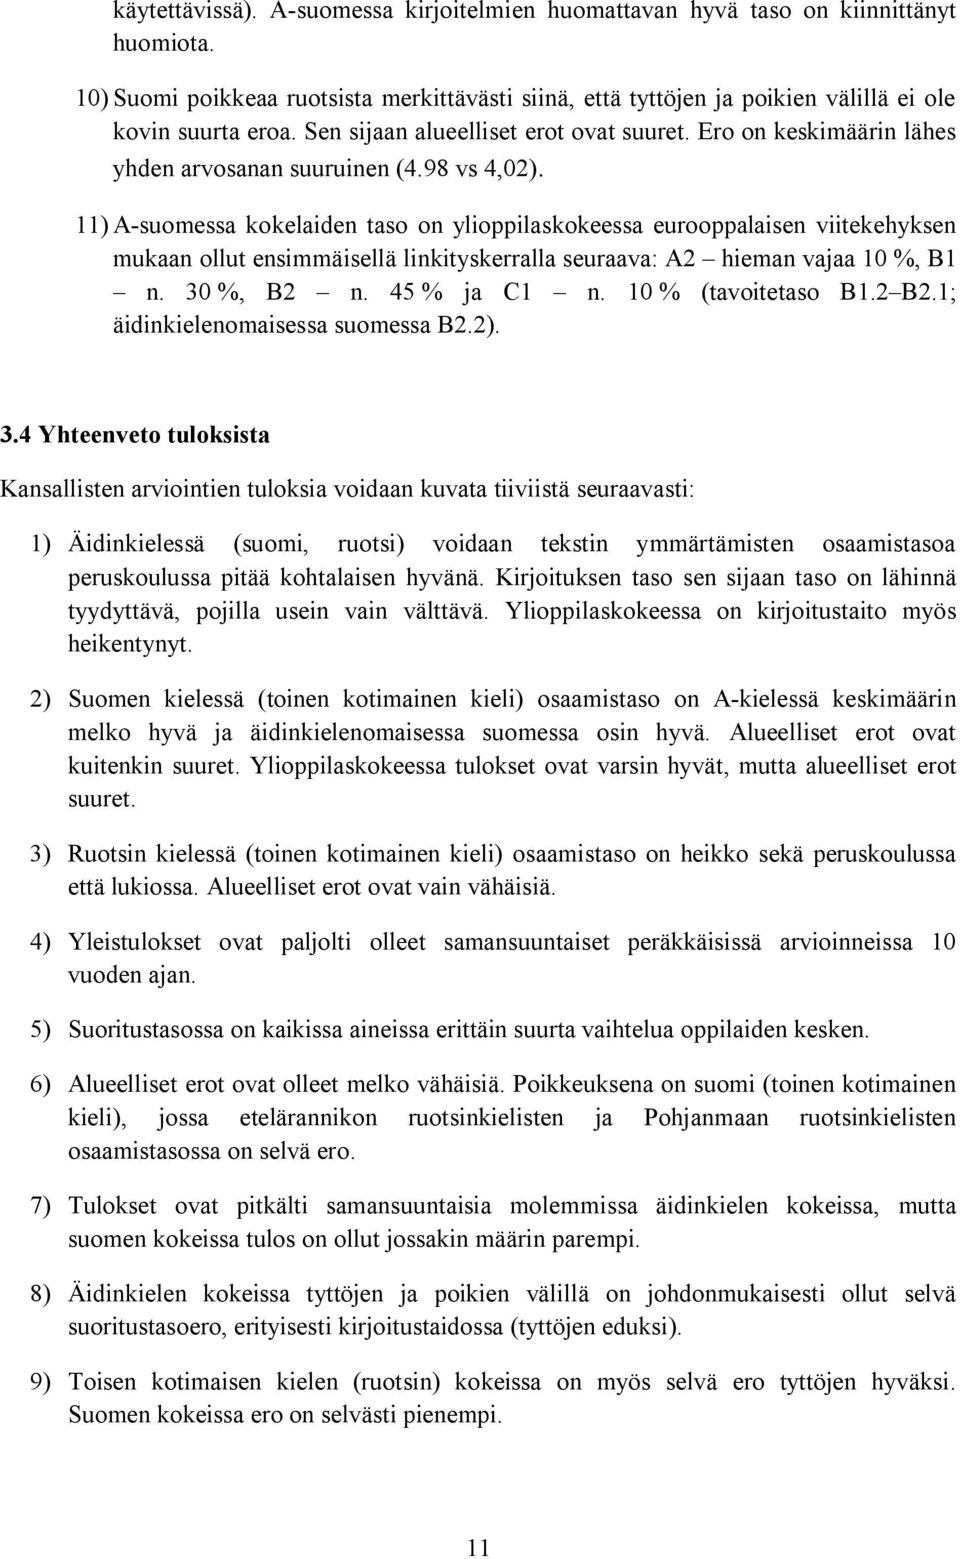 11) A-suomessa kokelaiden taso on ylioppilaskokeessa eurooppalaisen viitekehyksen mukaan ollut ensimmäisellä linkityskerralla seuraava: A2 hieman vajaa 10 %, B1 n. 30 %, B2 n. 45 % ja C1 n.